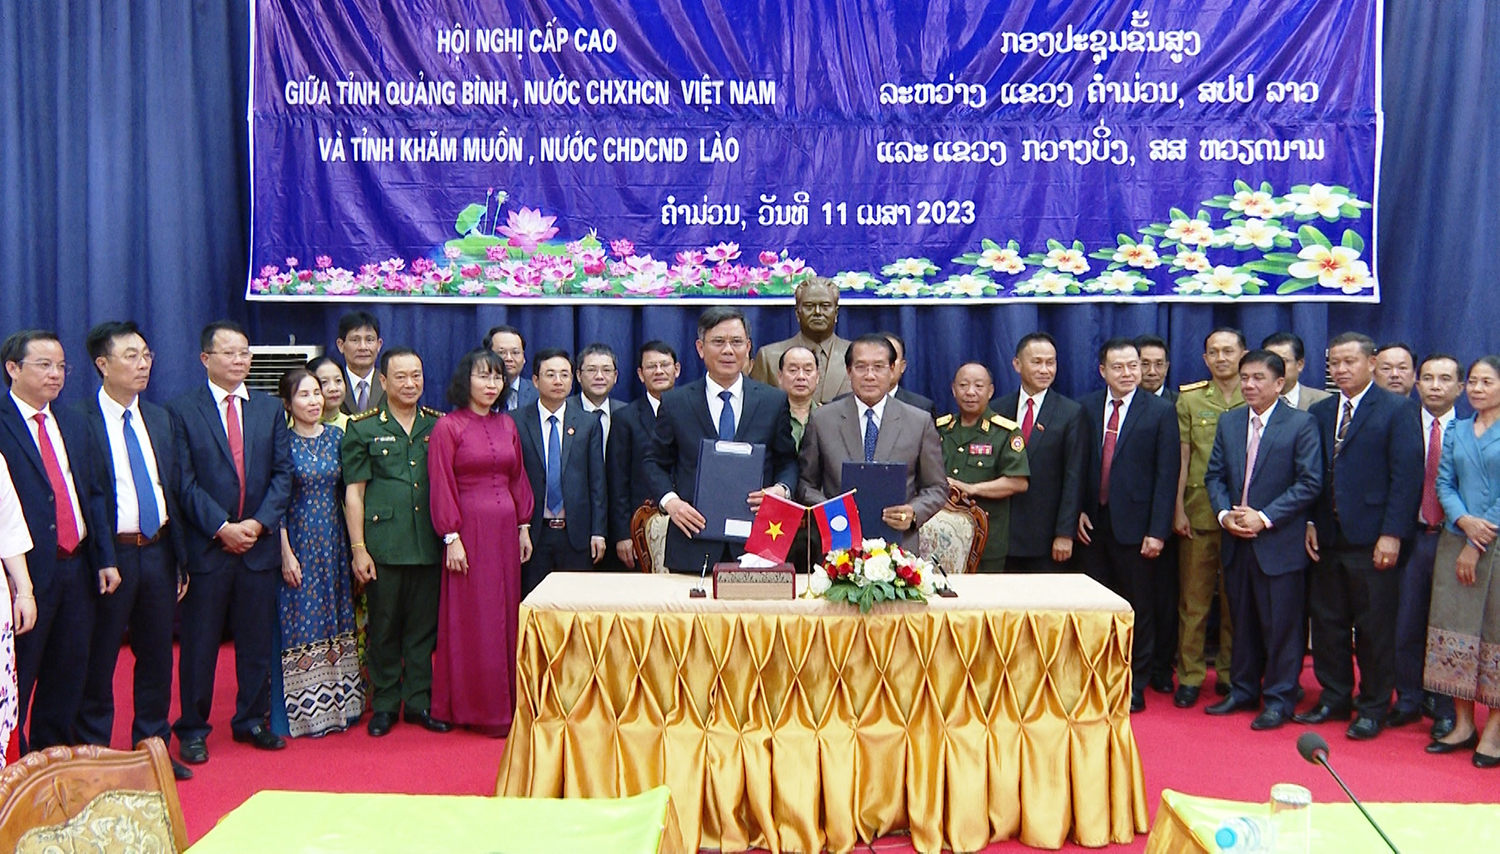 Ký kết Biên Bản hội đàm giữa đoàn đại biểu cấp cao tỉnh Quảng Bình và tỉnh Khăm Muồn, CHDCND Lào